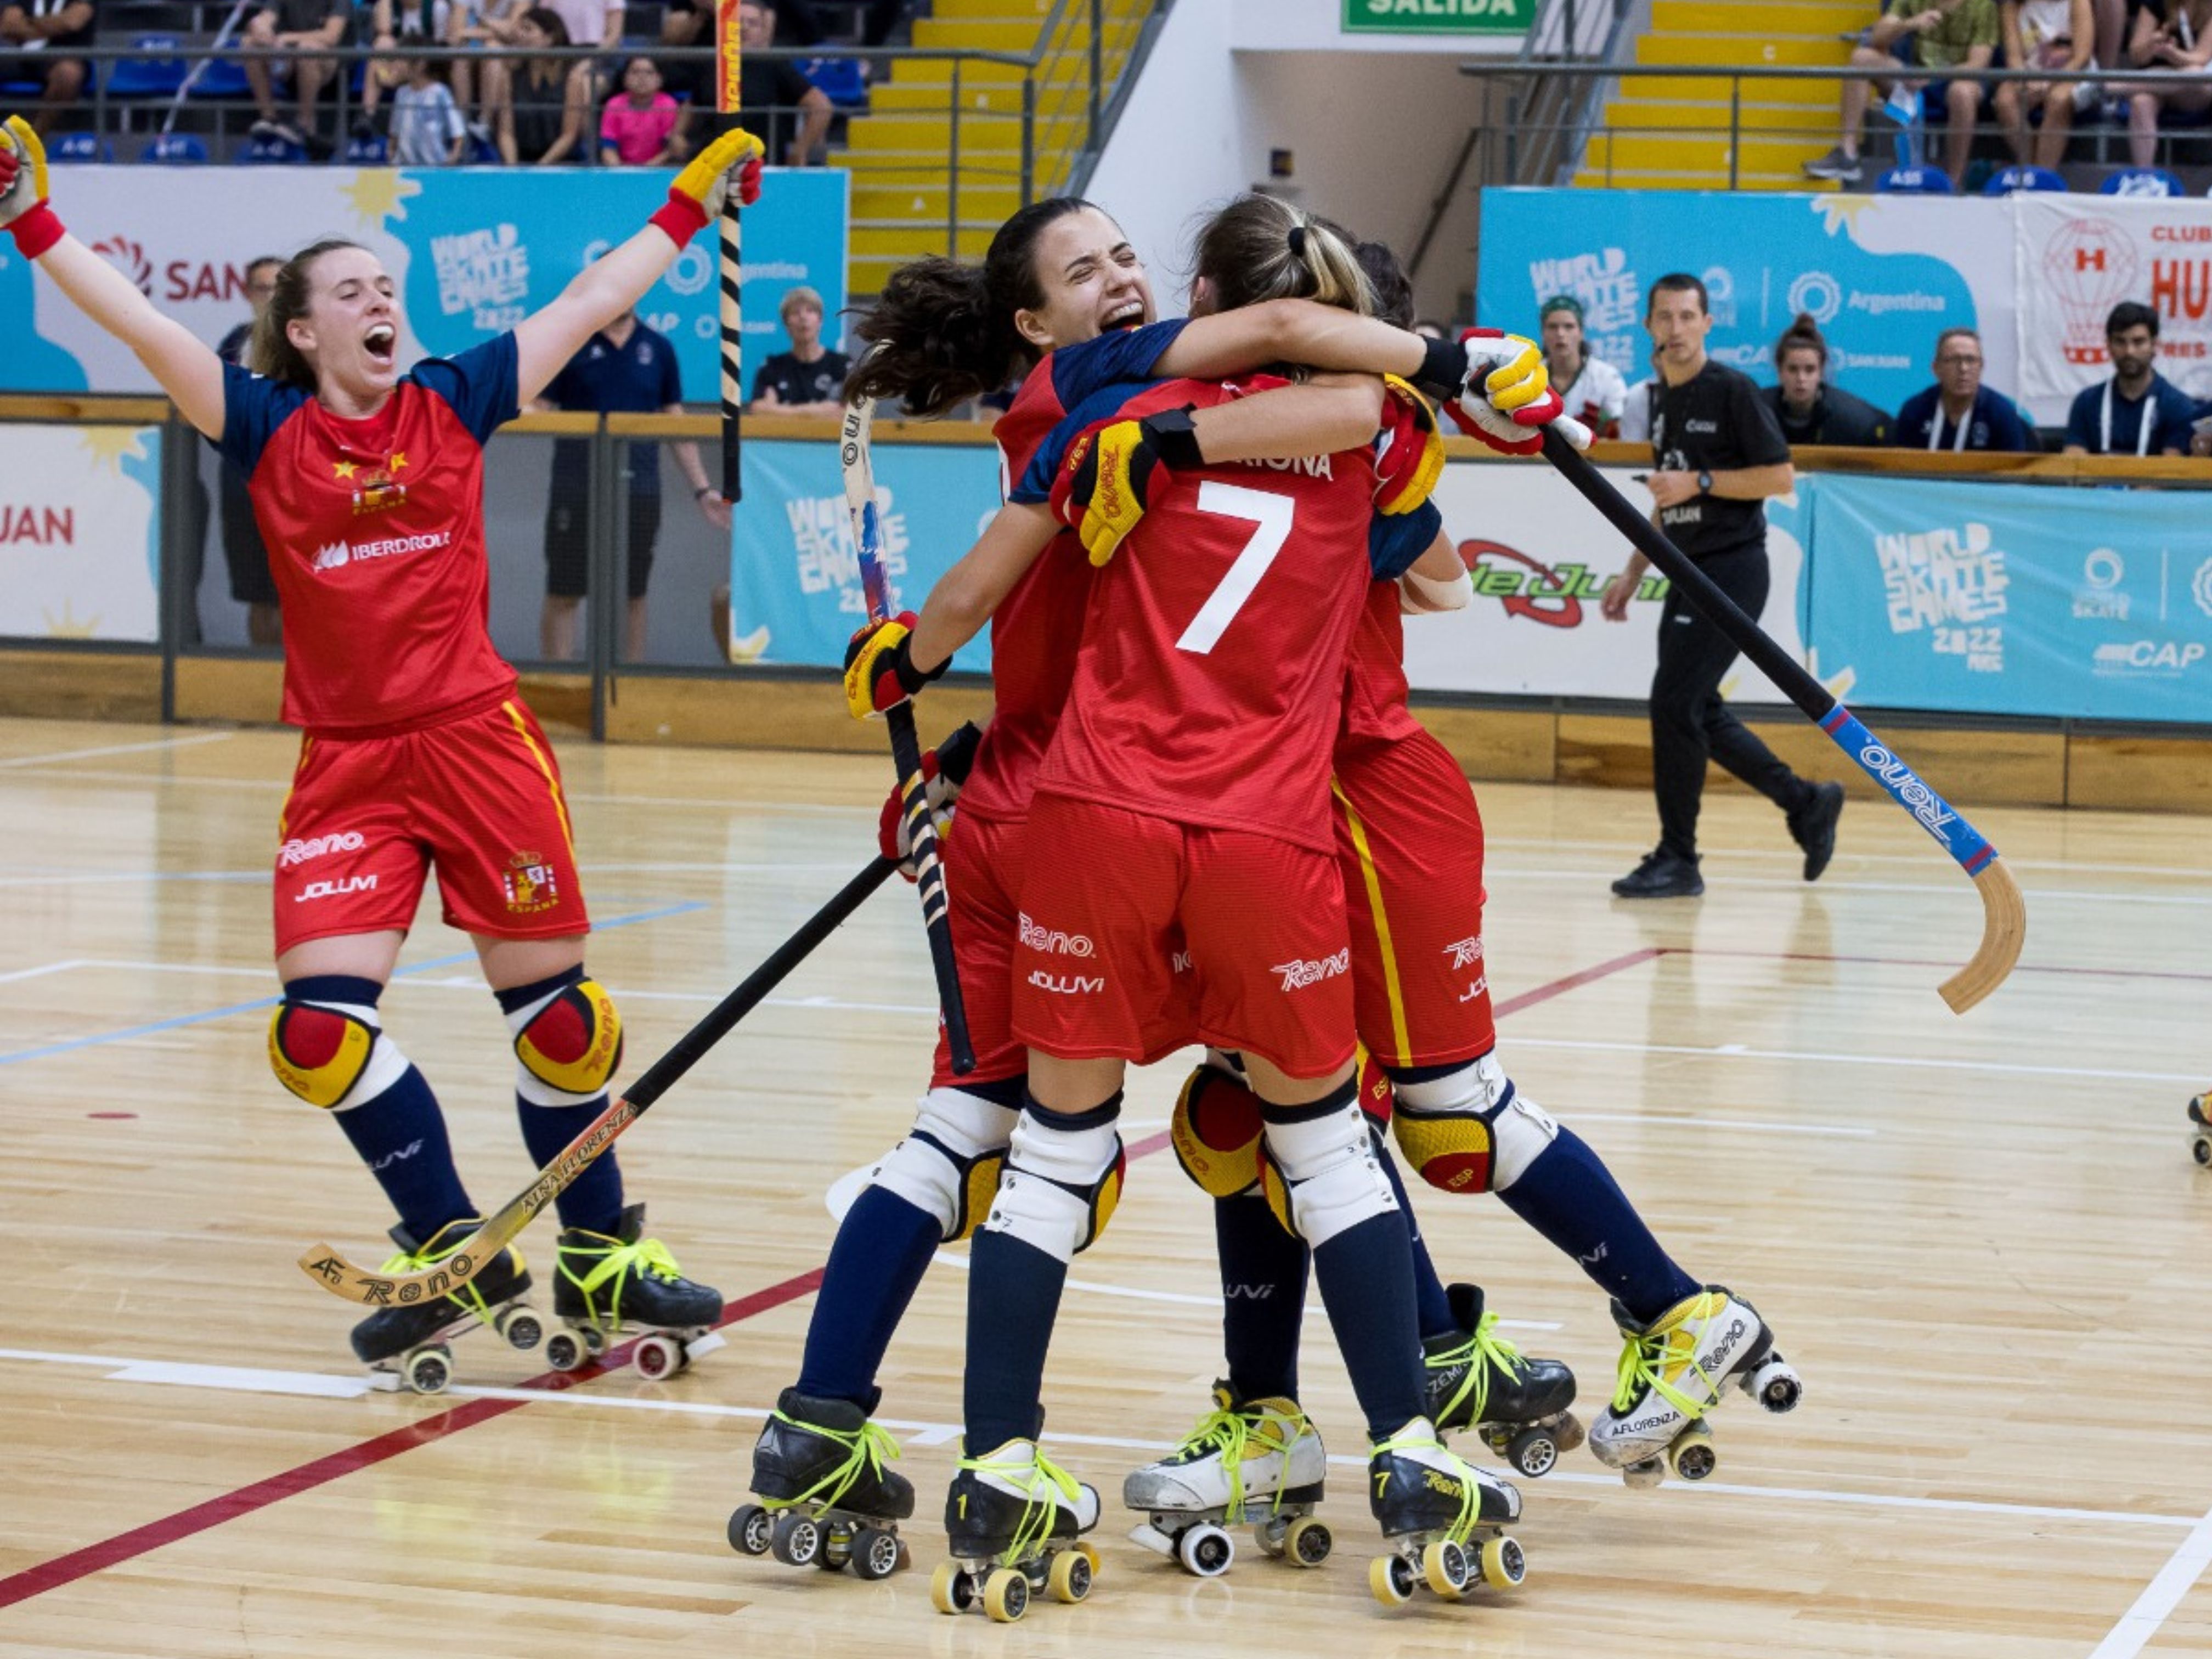 Remontada espectacular de la selección femenina ante Portugal Patines